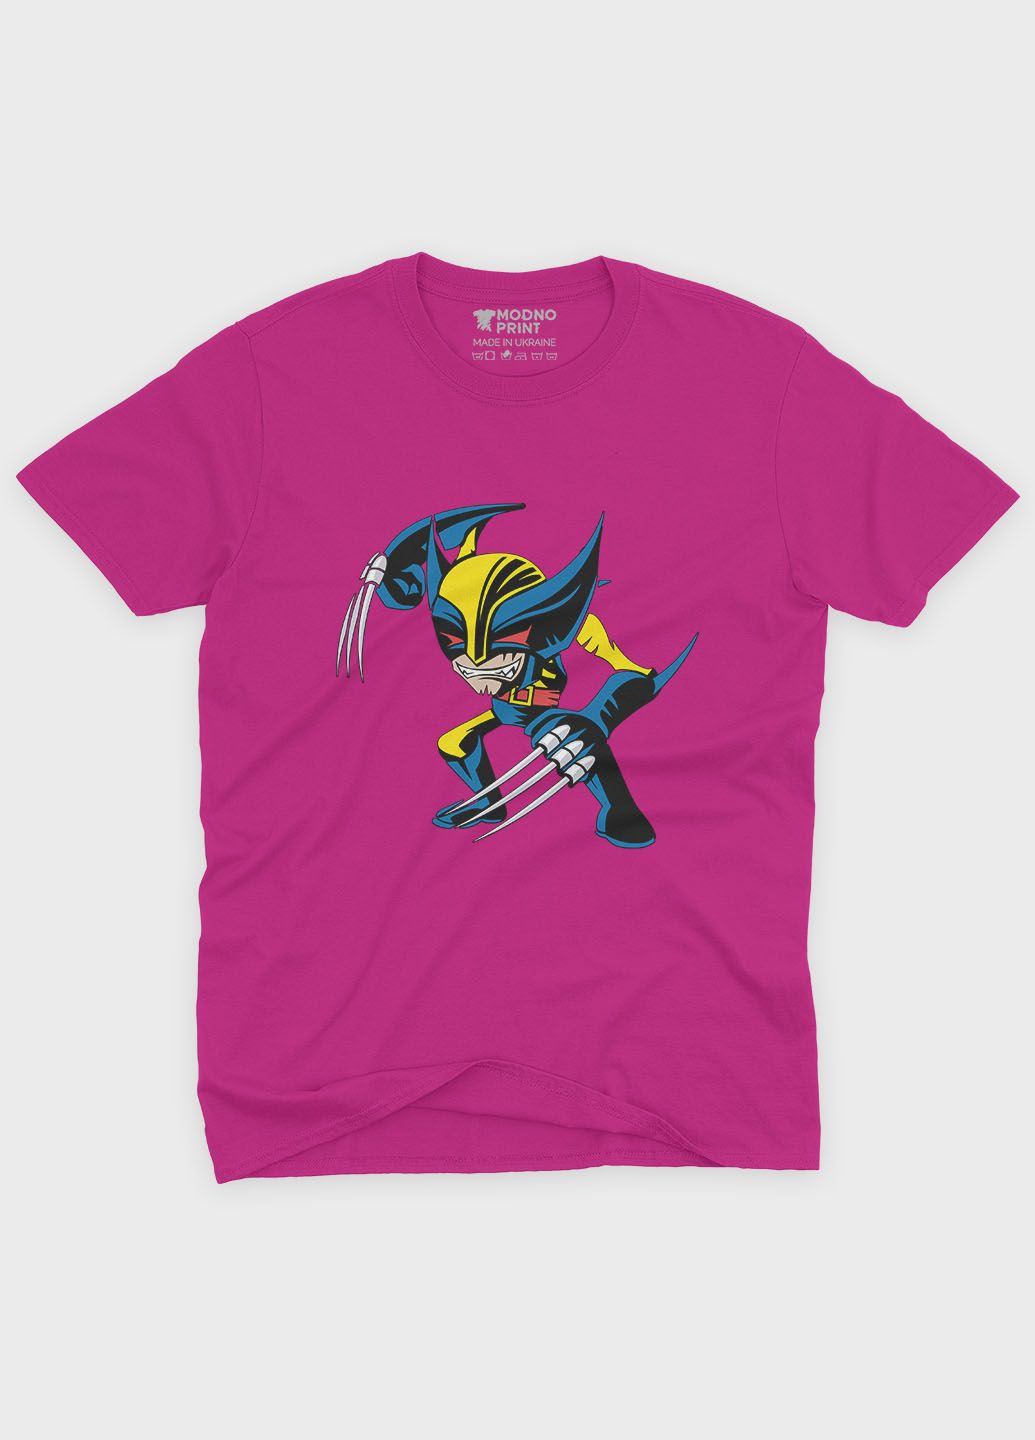 Рожева демісезонна футболка для дівчинки з принтом супергероя - росомаха (ts001-1-fuxj-006-021-002-g) Modno